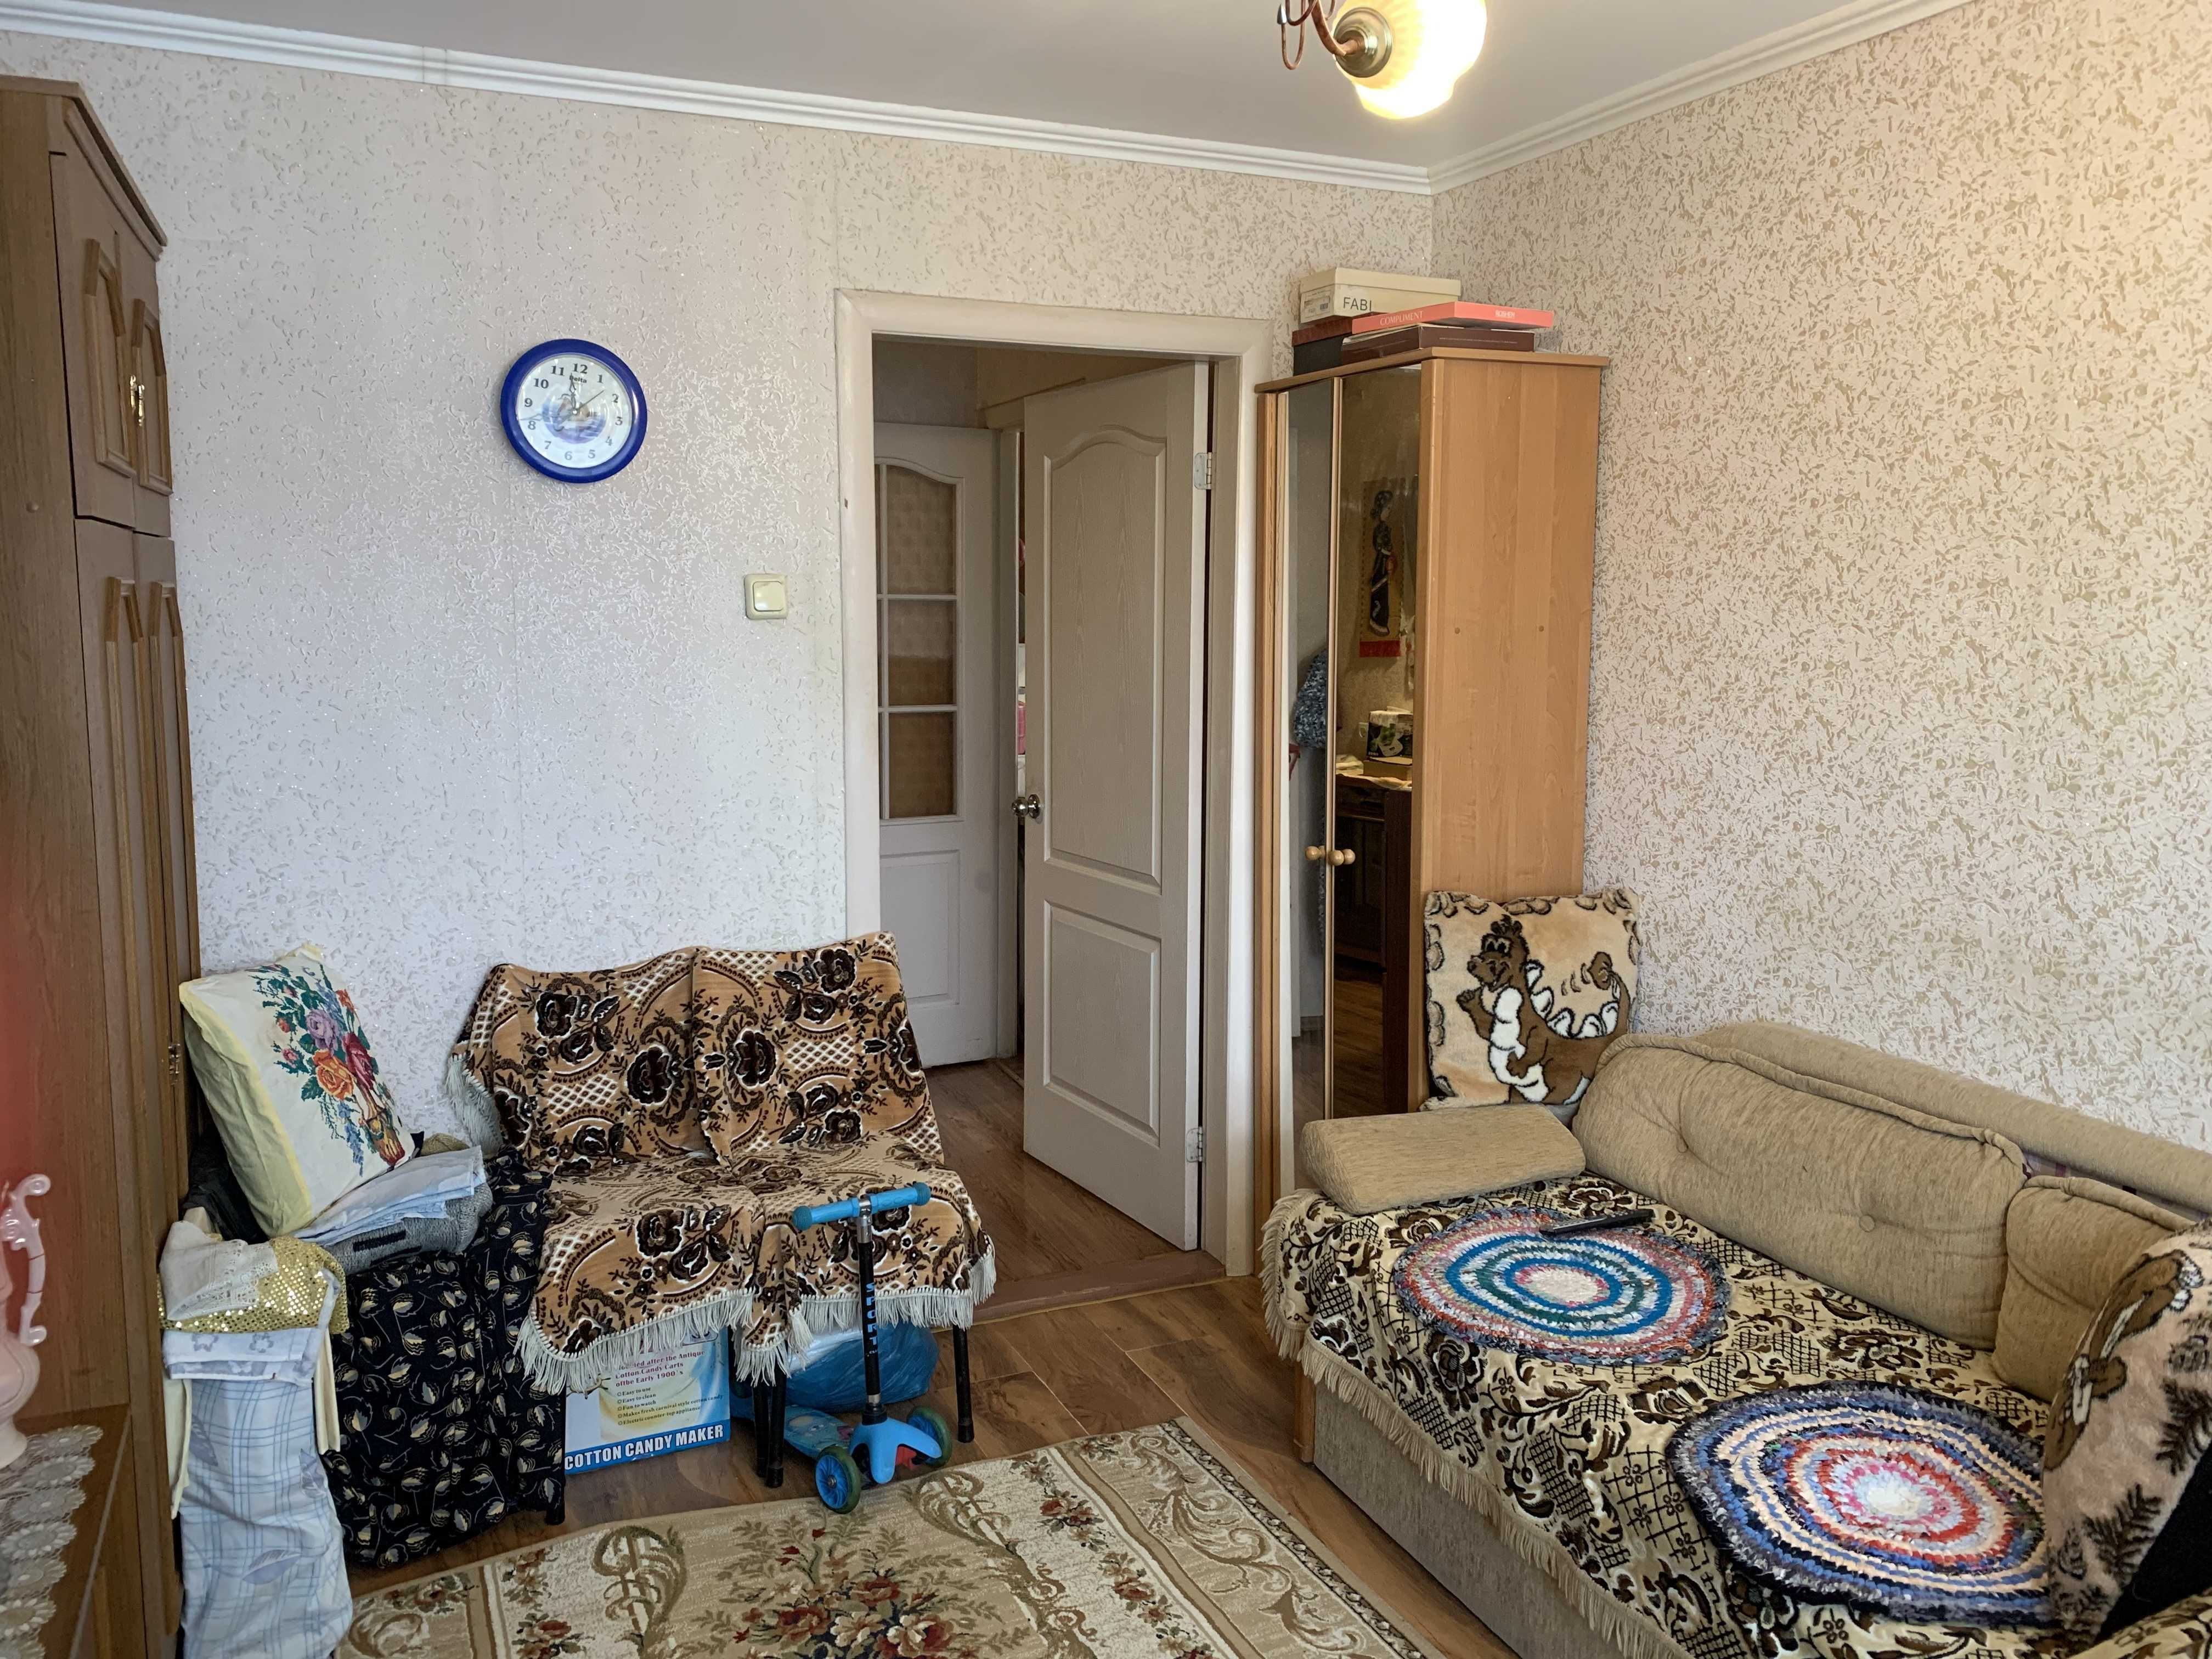 Продам двух комнатную квартиру в центре г. Черноморск!